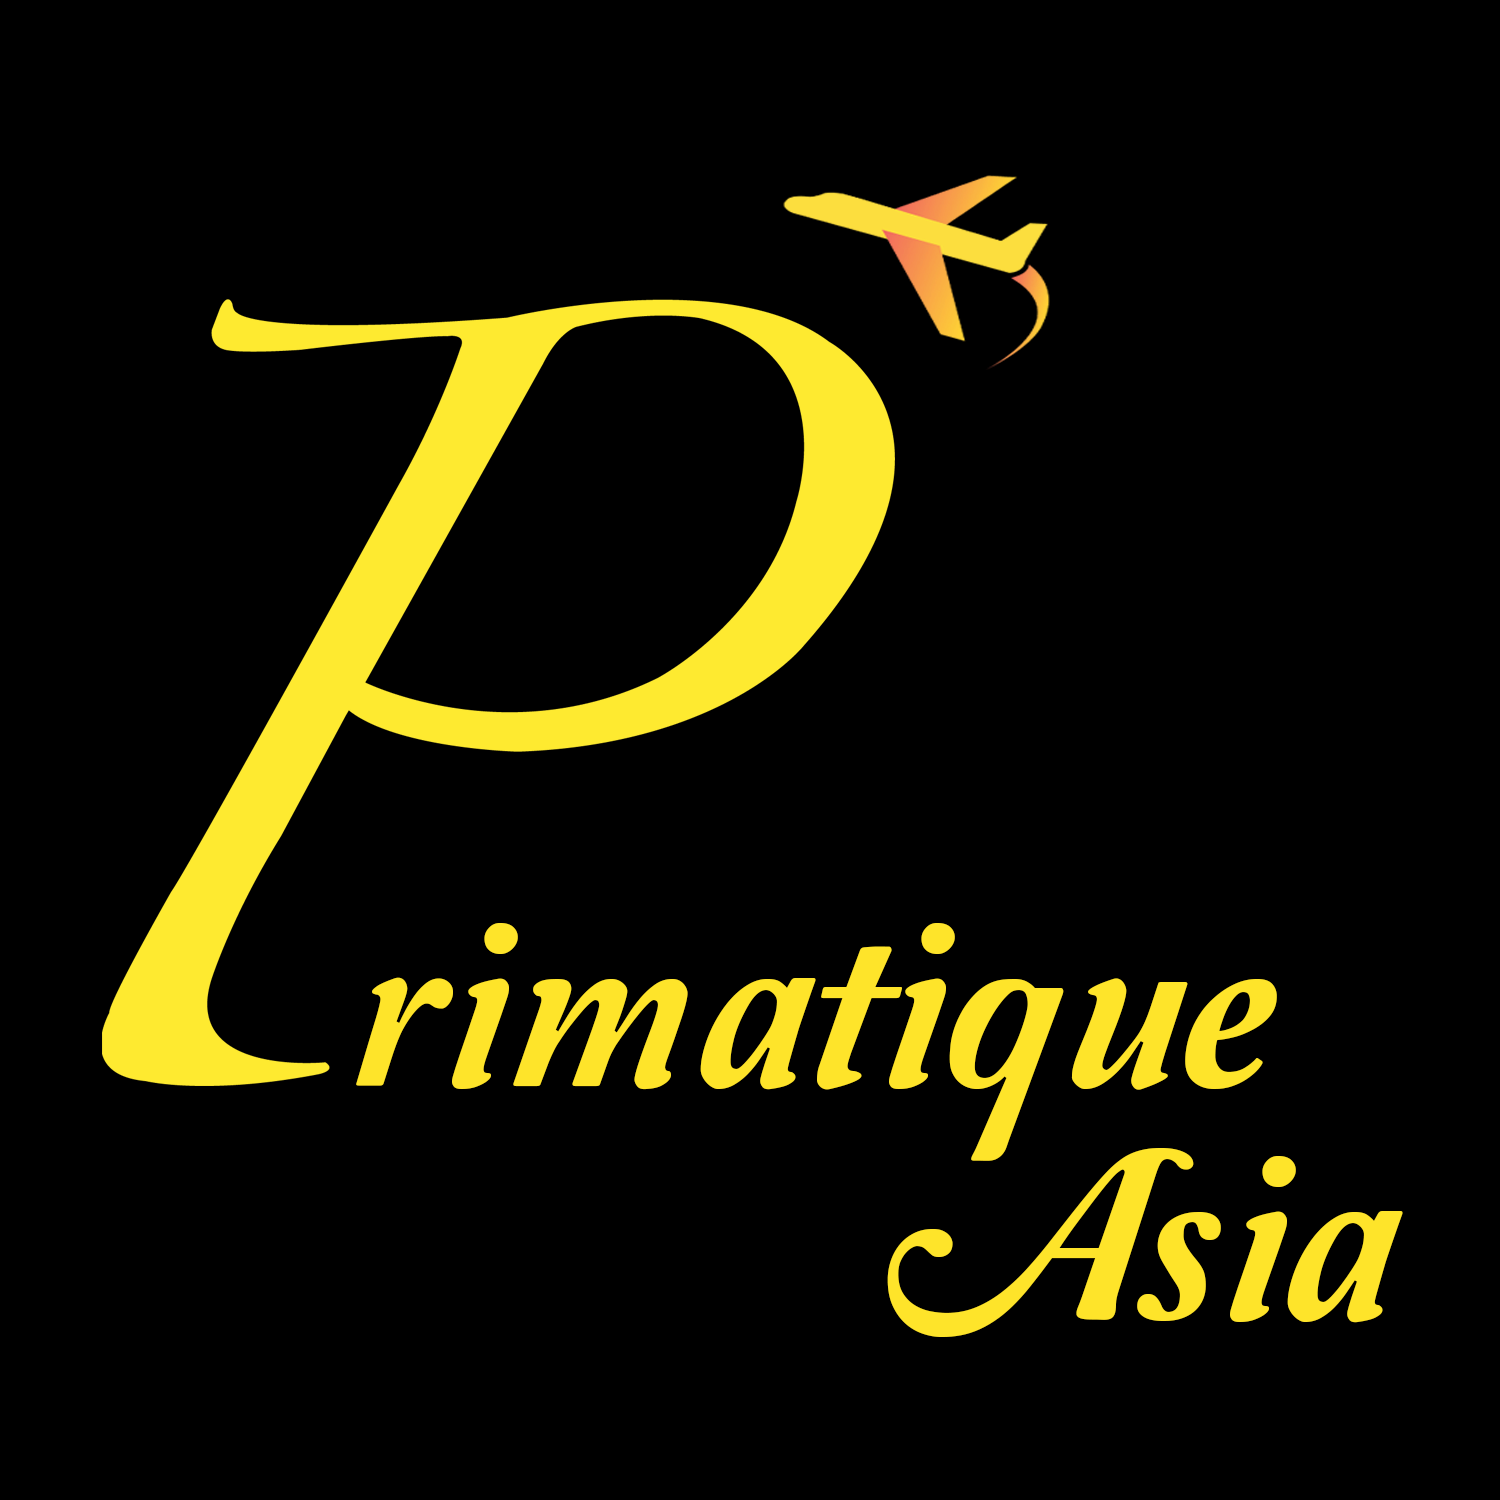 Primatique Asia